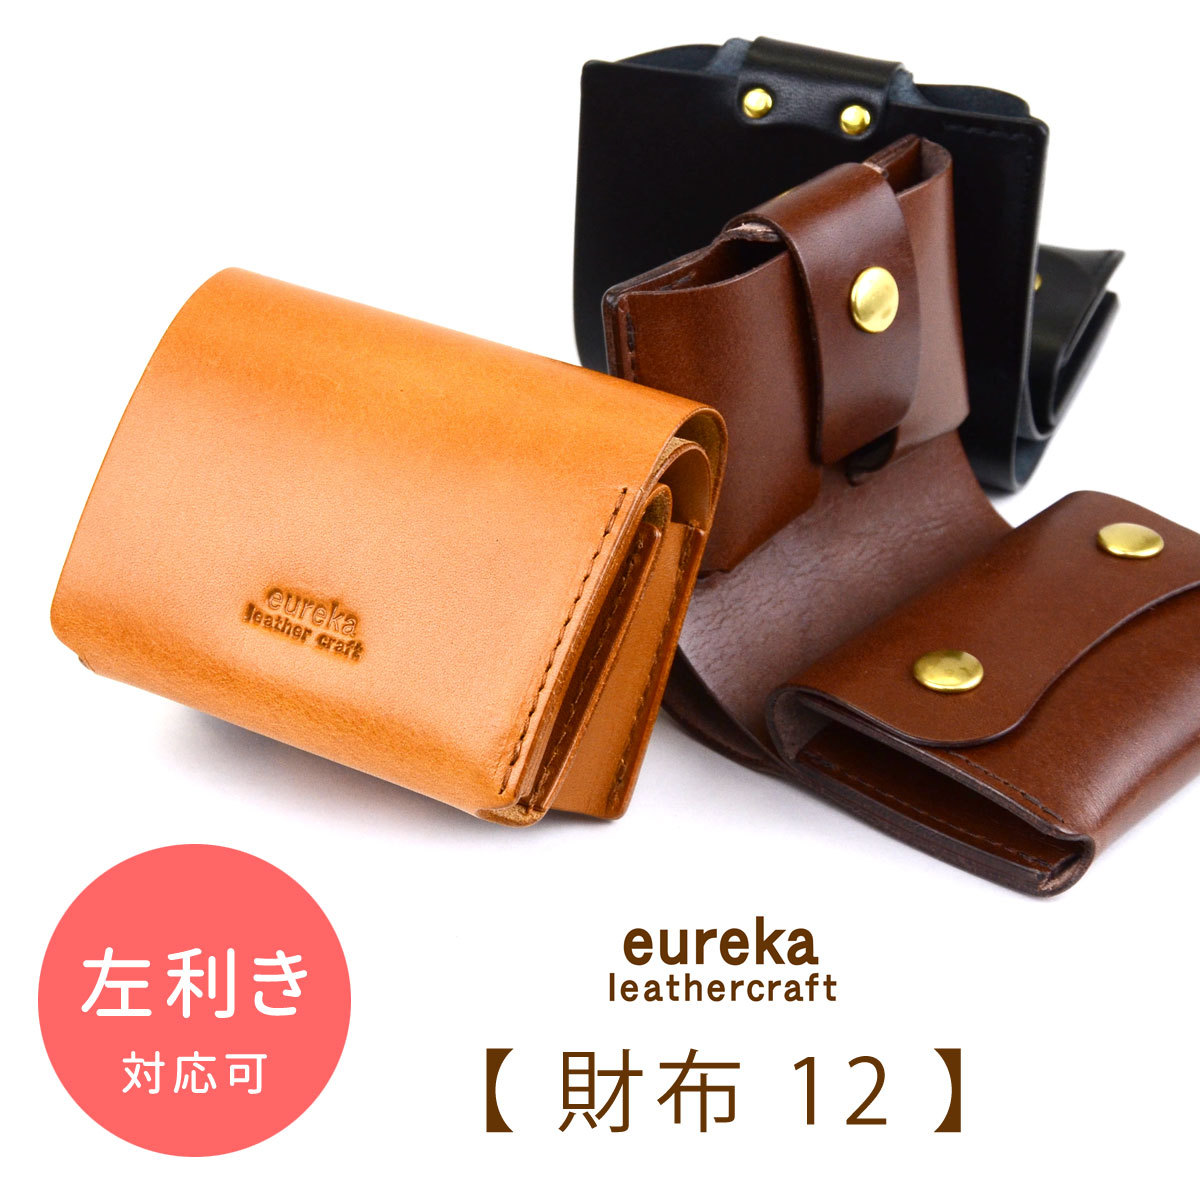 ミニ財布 レディース 二つ折り日本製 ヌメ革 eureka leathercraft ユリカレザークラフト コンパクト カードまとめて